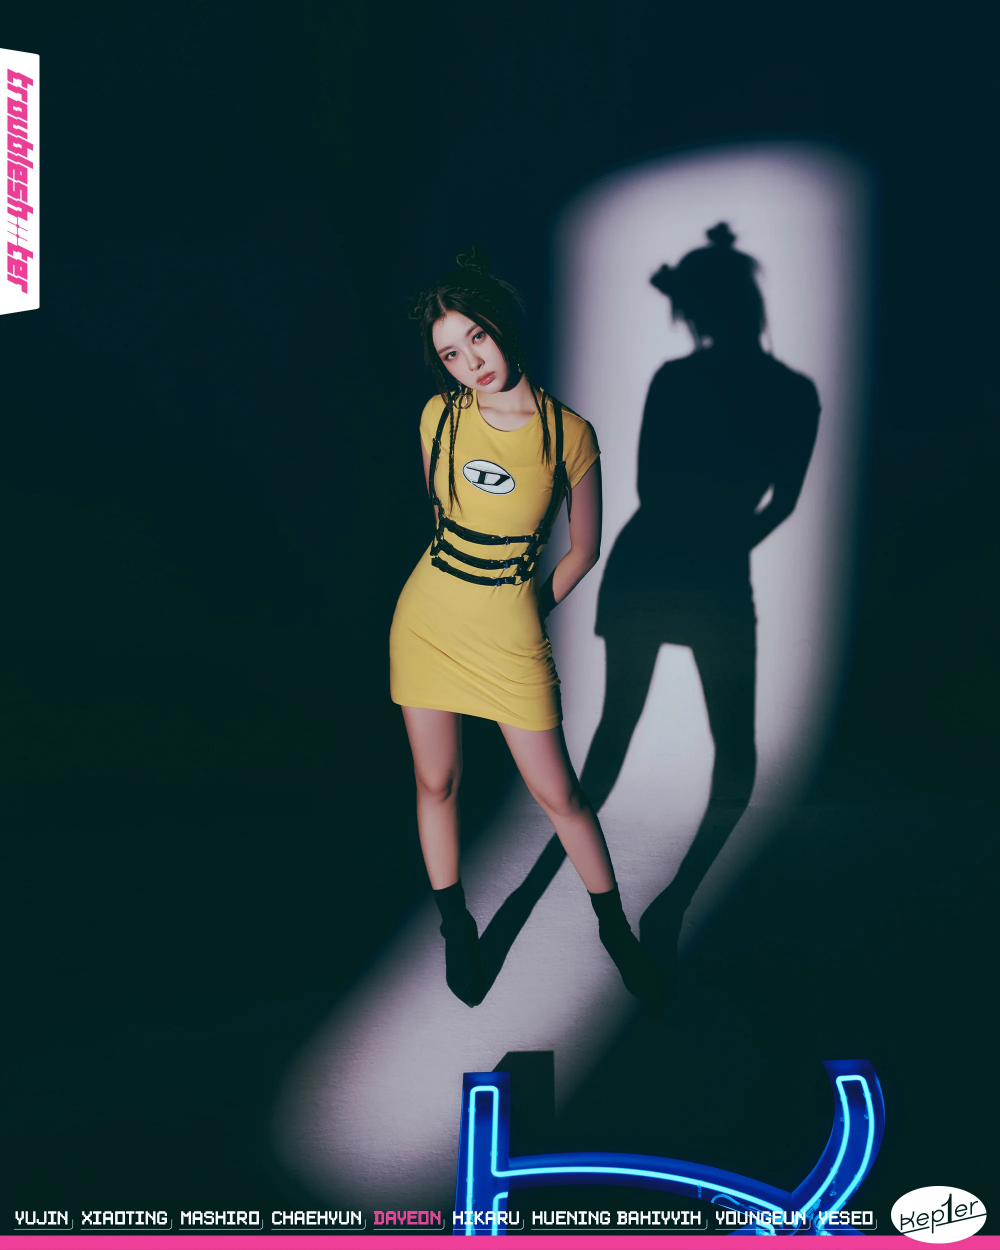 [Камбэк] Kep1er мини-альбом «Troubleshooter»: обложка предстоящего альбома